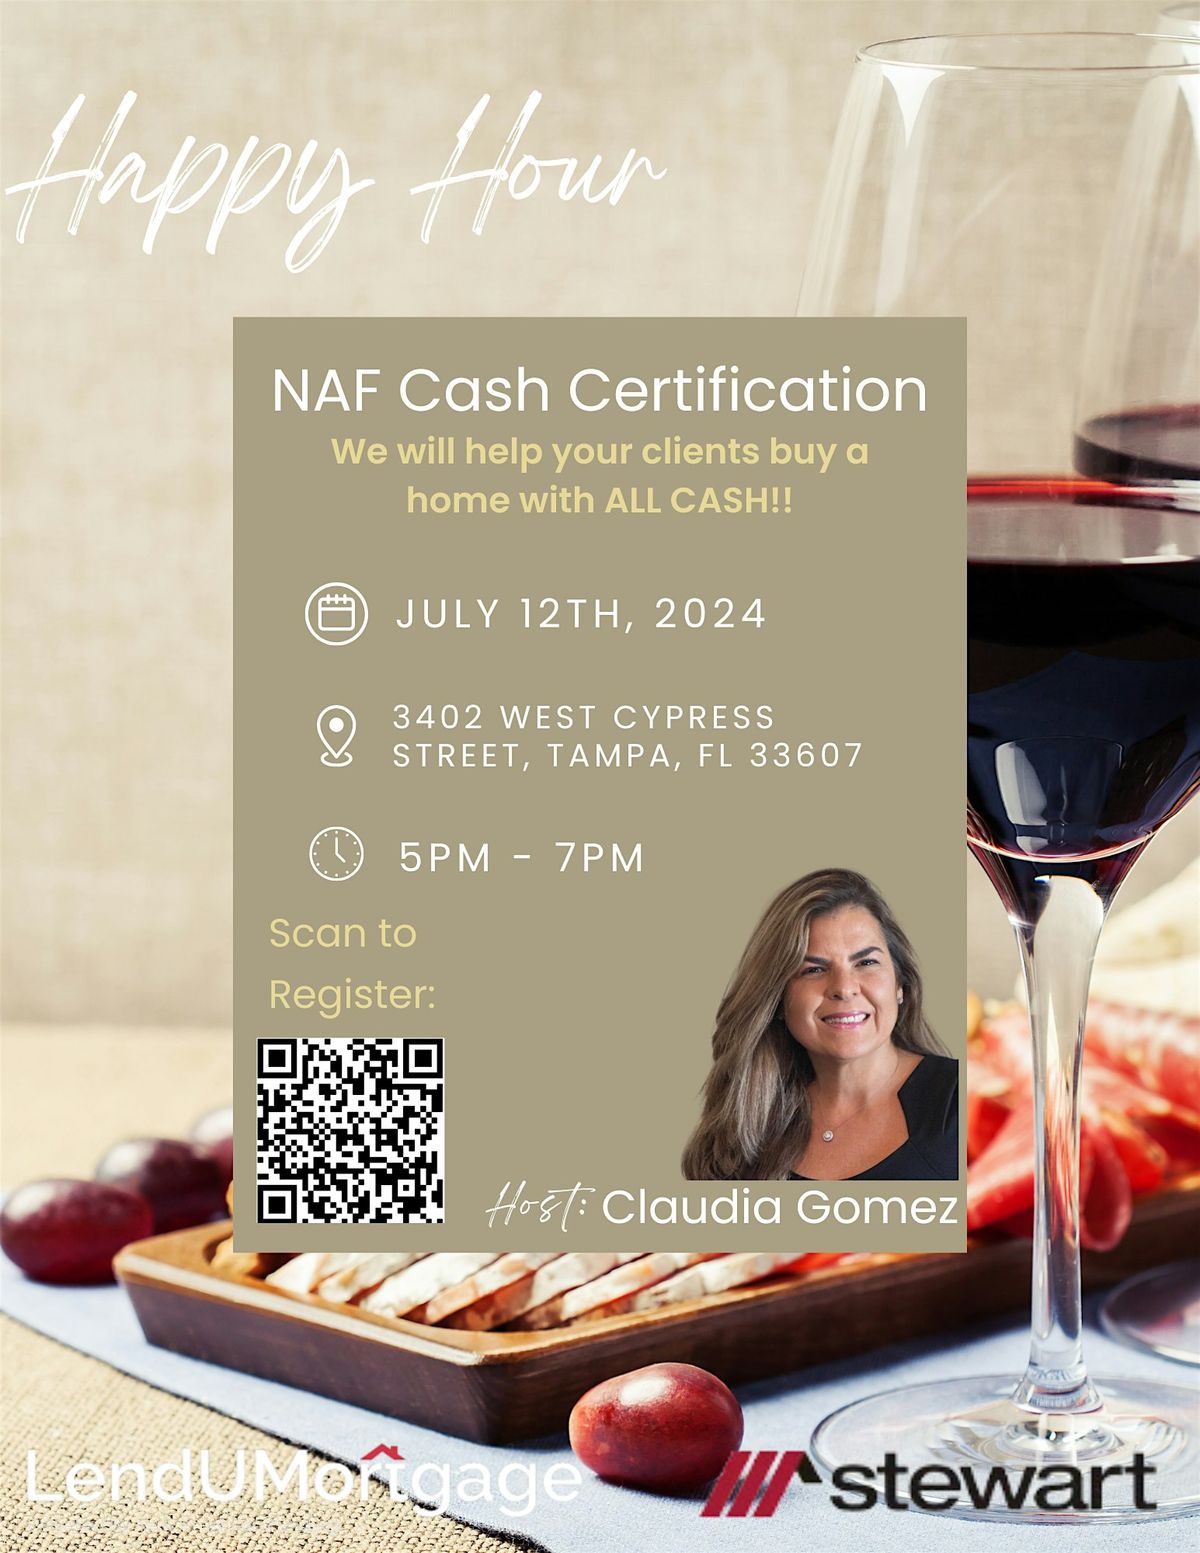 Happy Hour NAF Cash Certification